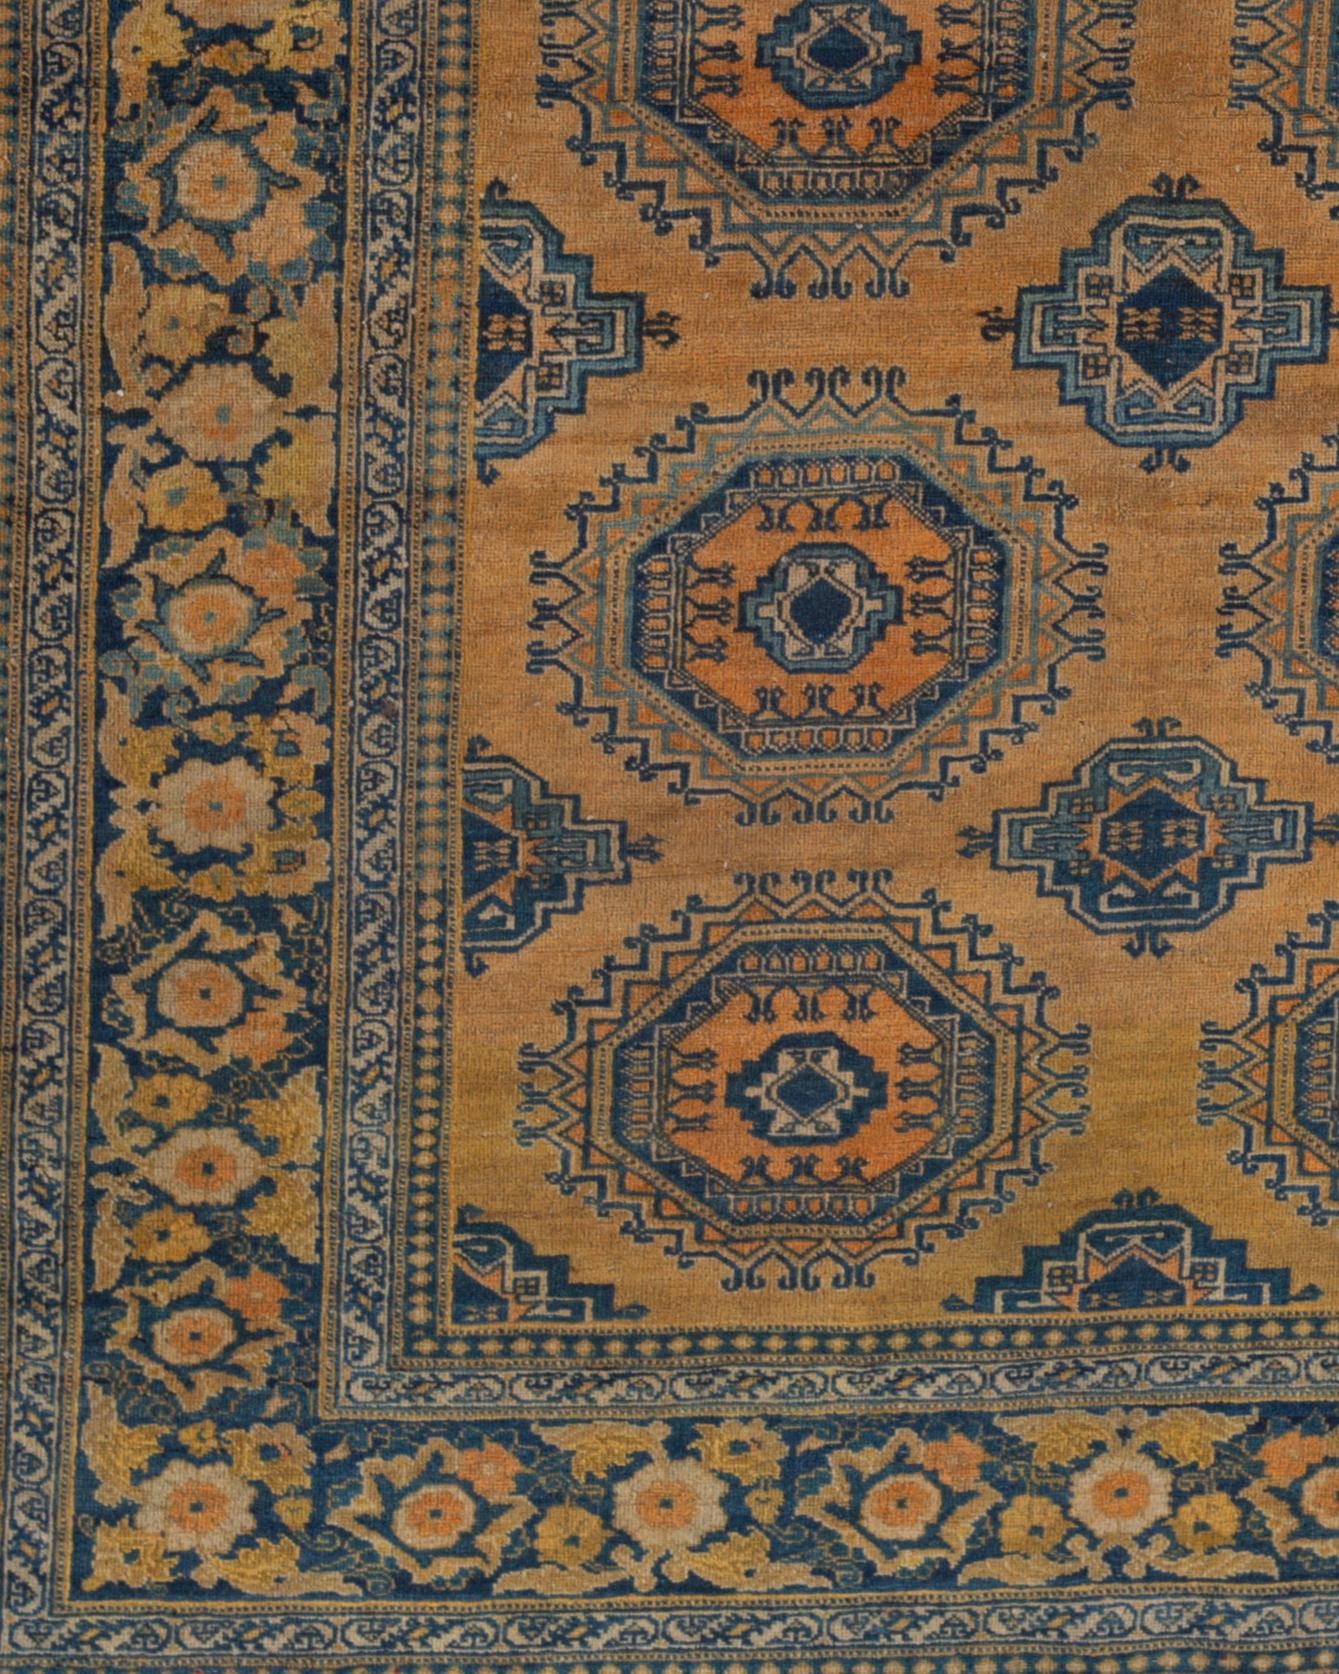 Antiker persischer Täbris-Teppich, um 1890. Die Wiederbelebung des Perserteppichs begann um 1870 in Täbris, und die Teppichhändler von Täbris waren maßgeblich an der Renaissance des Handwerks im gesamten Iran beteiligt. Dieses schöne Exemplar ist